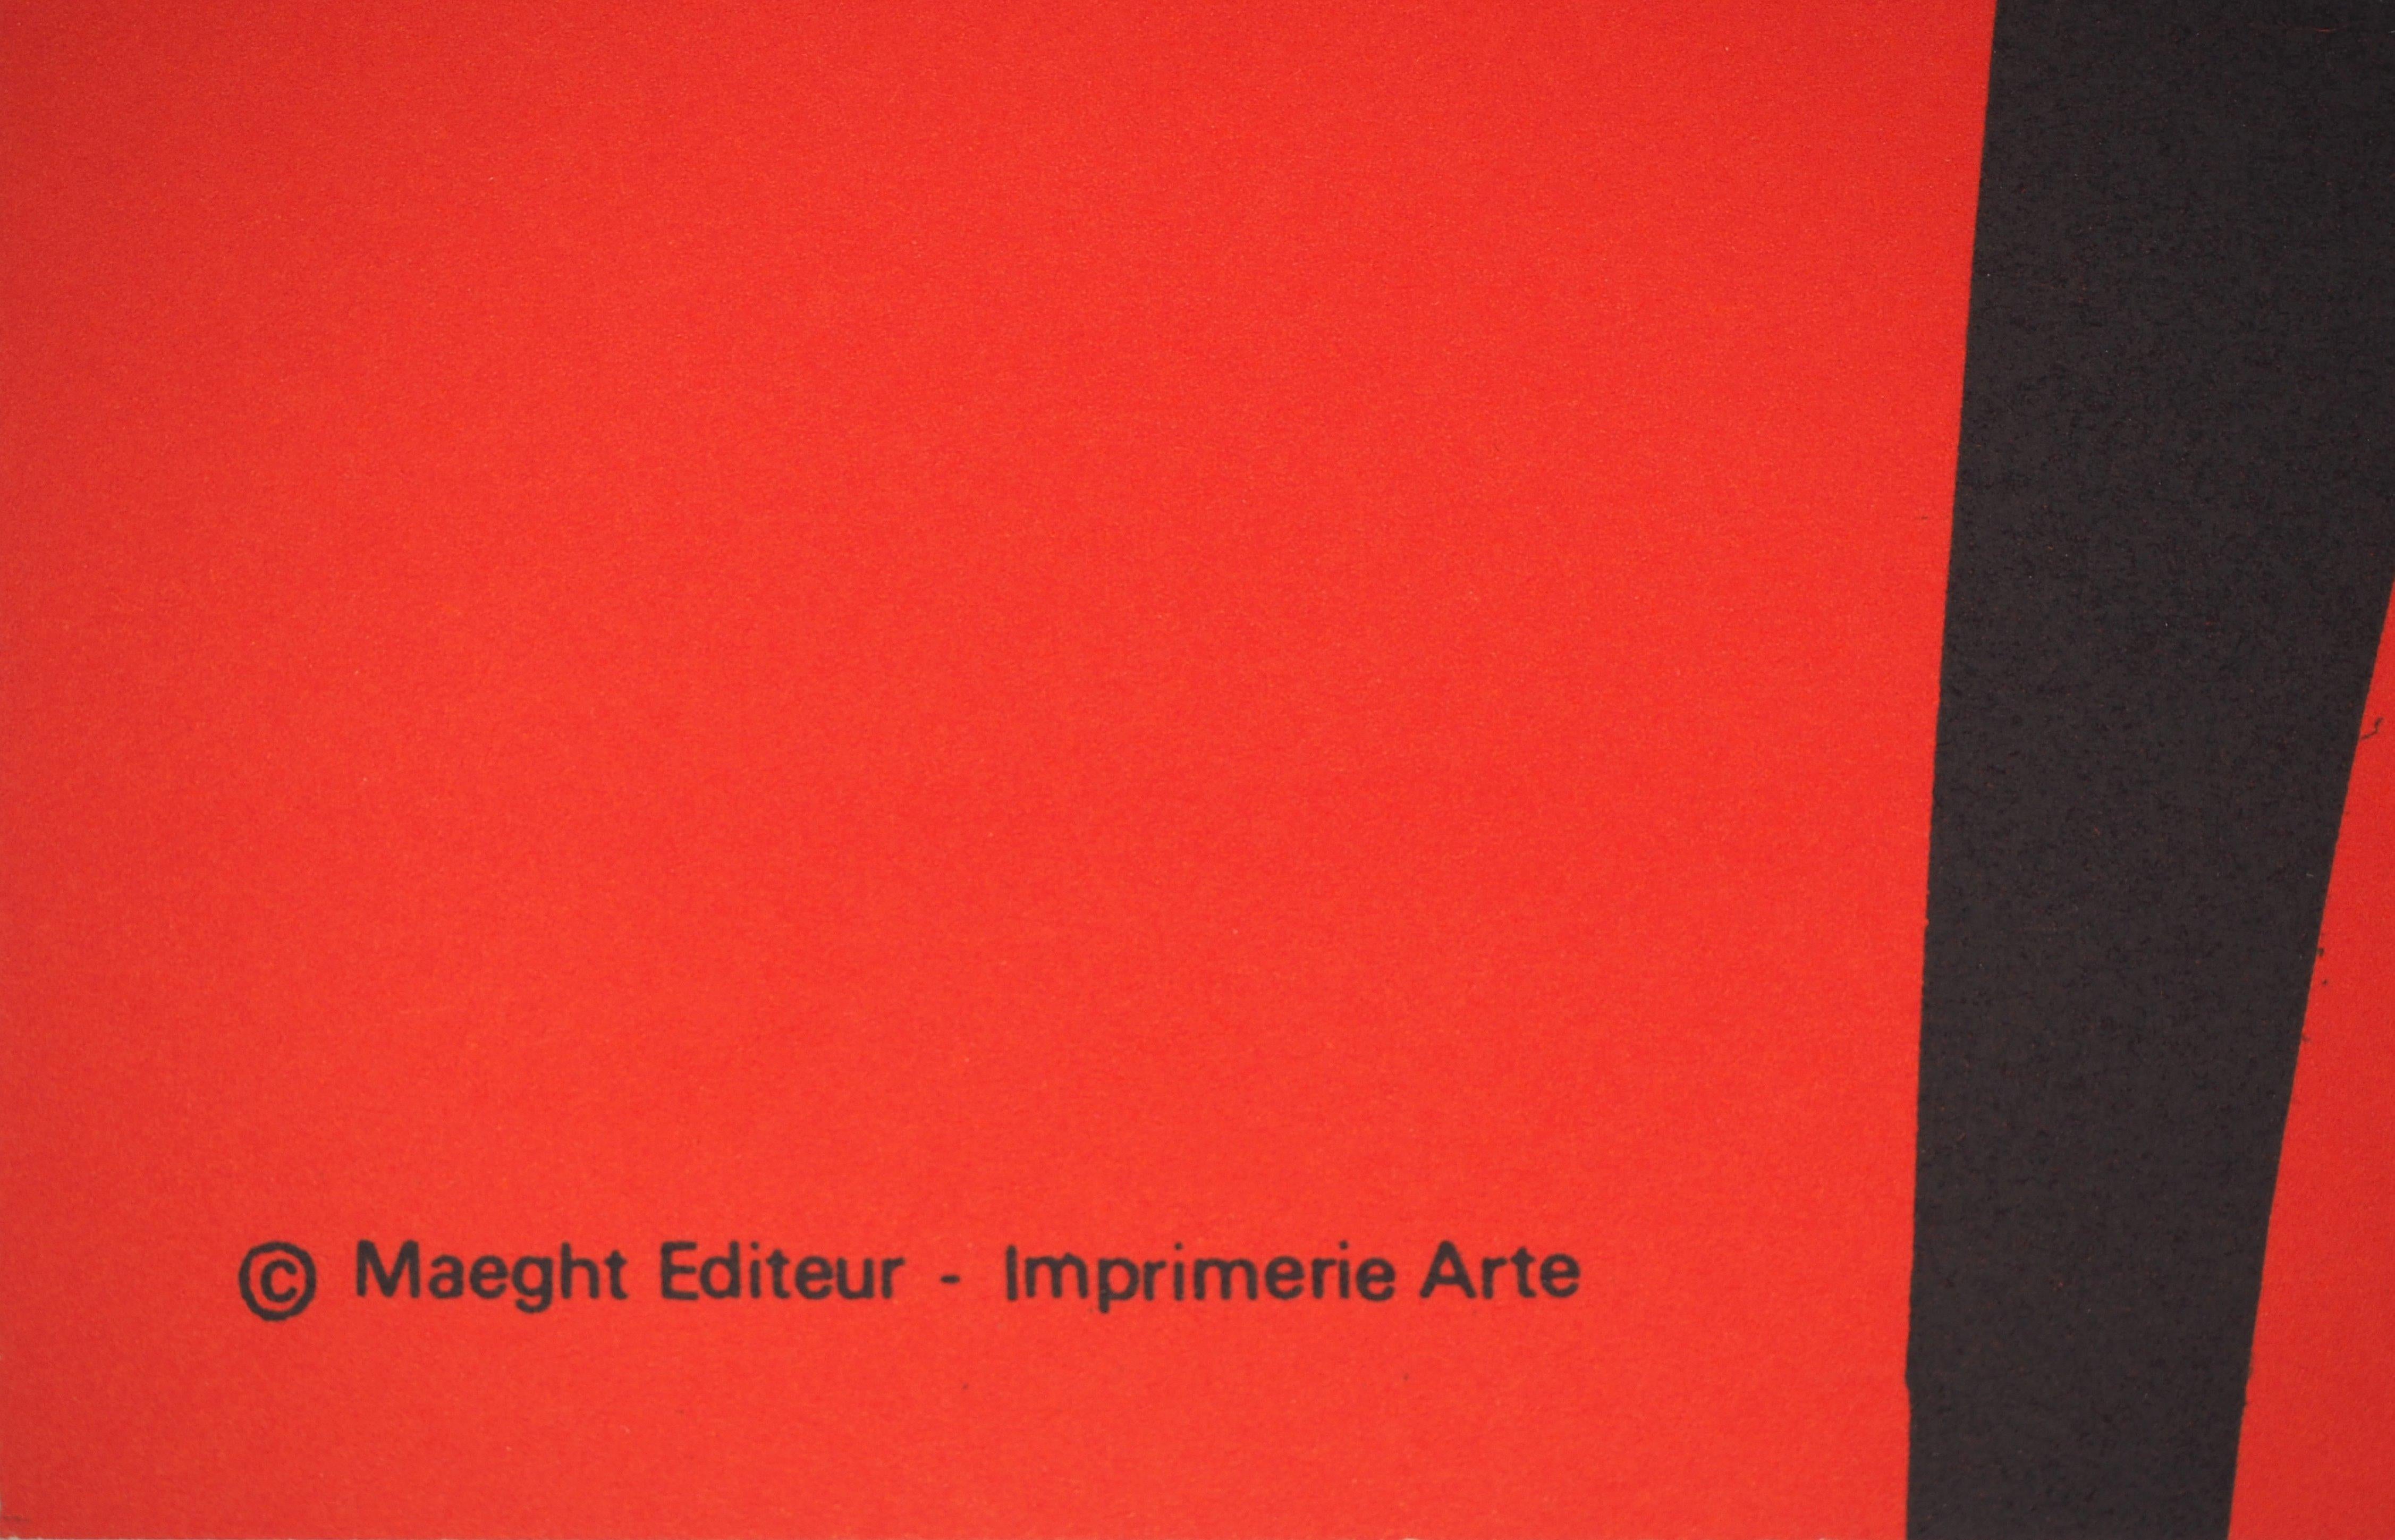 Alexander CALDER (après)
Ombre noire, 1969

Affiche lithographiée
Réalisé pour l'exposition d'Alexander Calder à la Fondation Maeght en 1969
Imprimeur : Arte Paris
Editeur : Maeght
70 x 49,8 cm (environ 27,5 x 19,2 in)

Excellent état